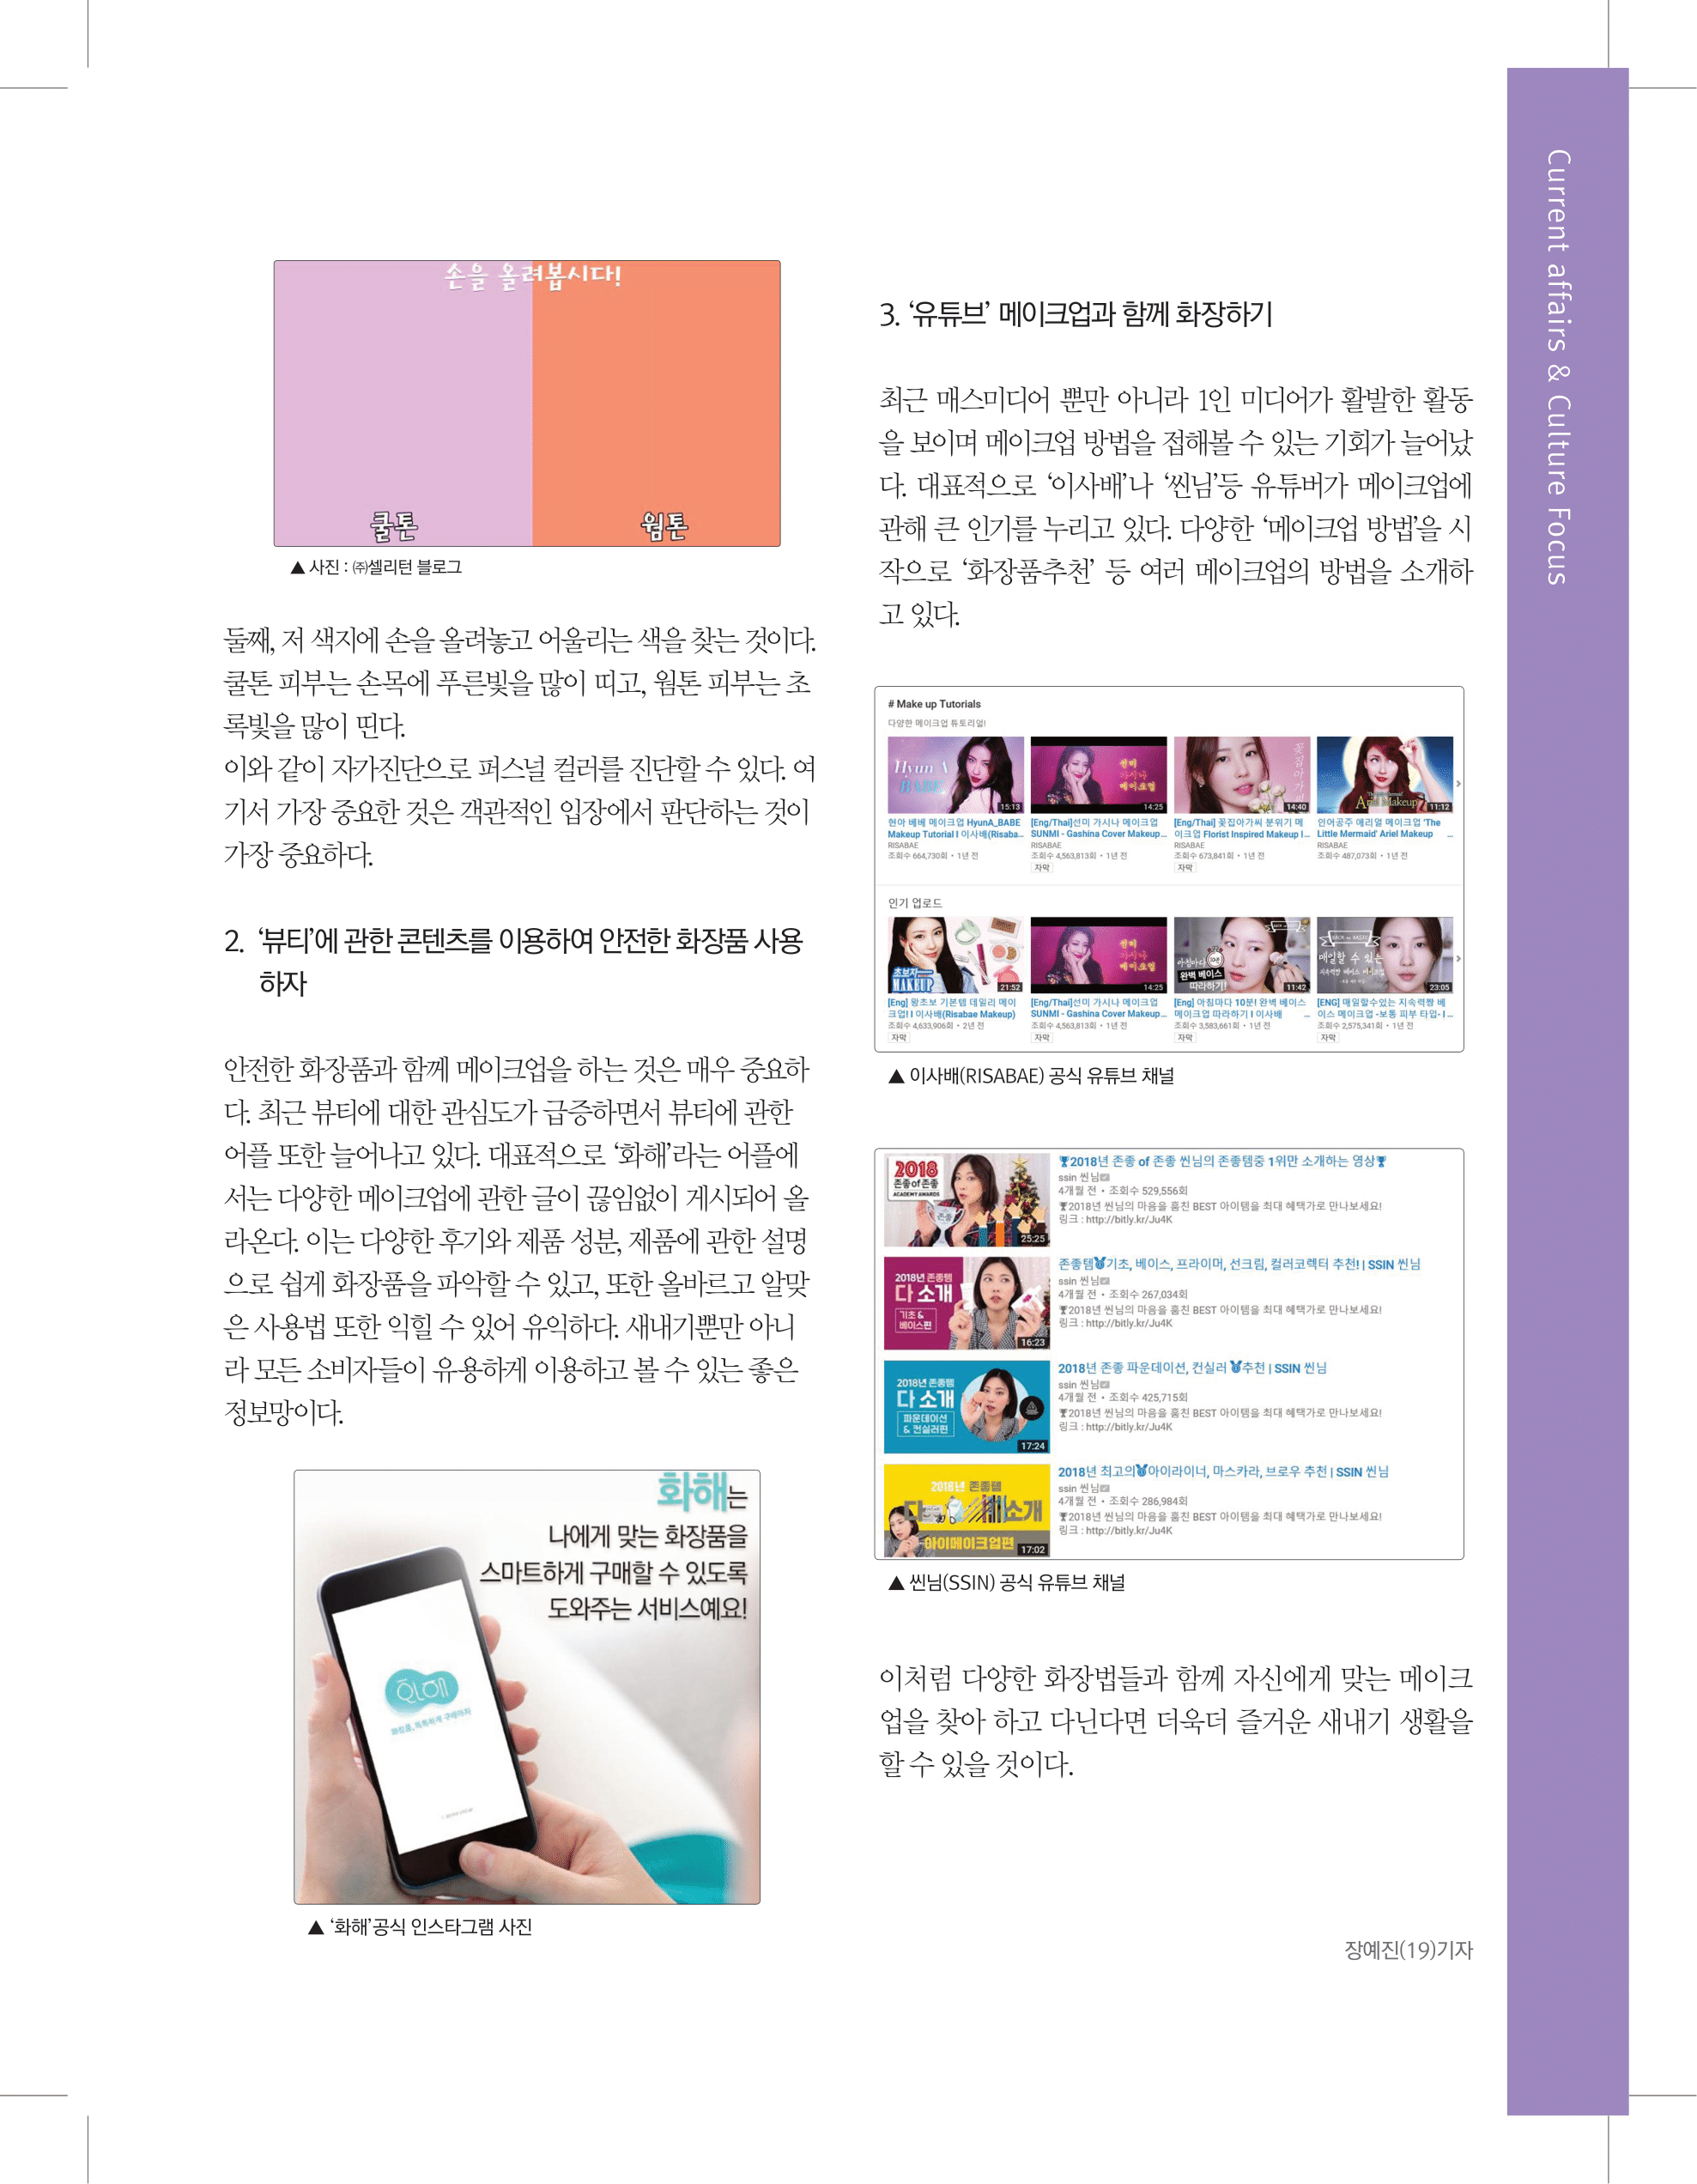 뜻새김 신문 73호 23